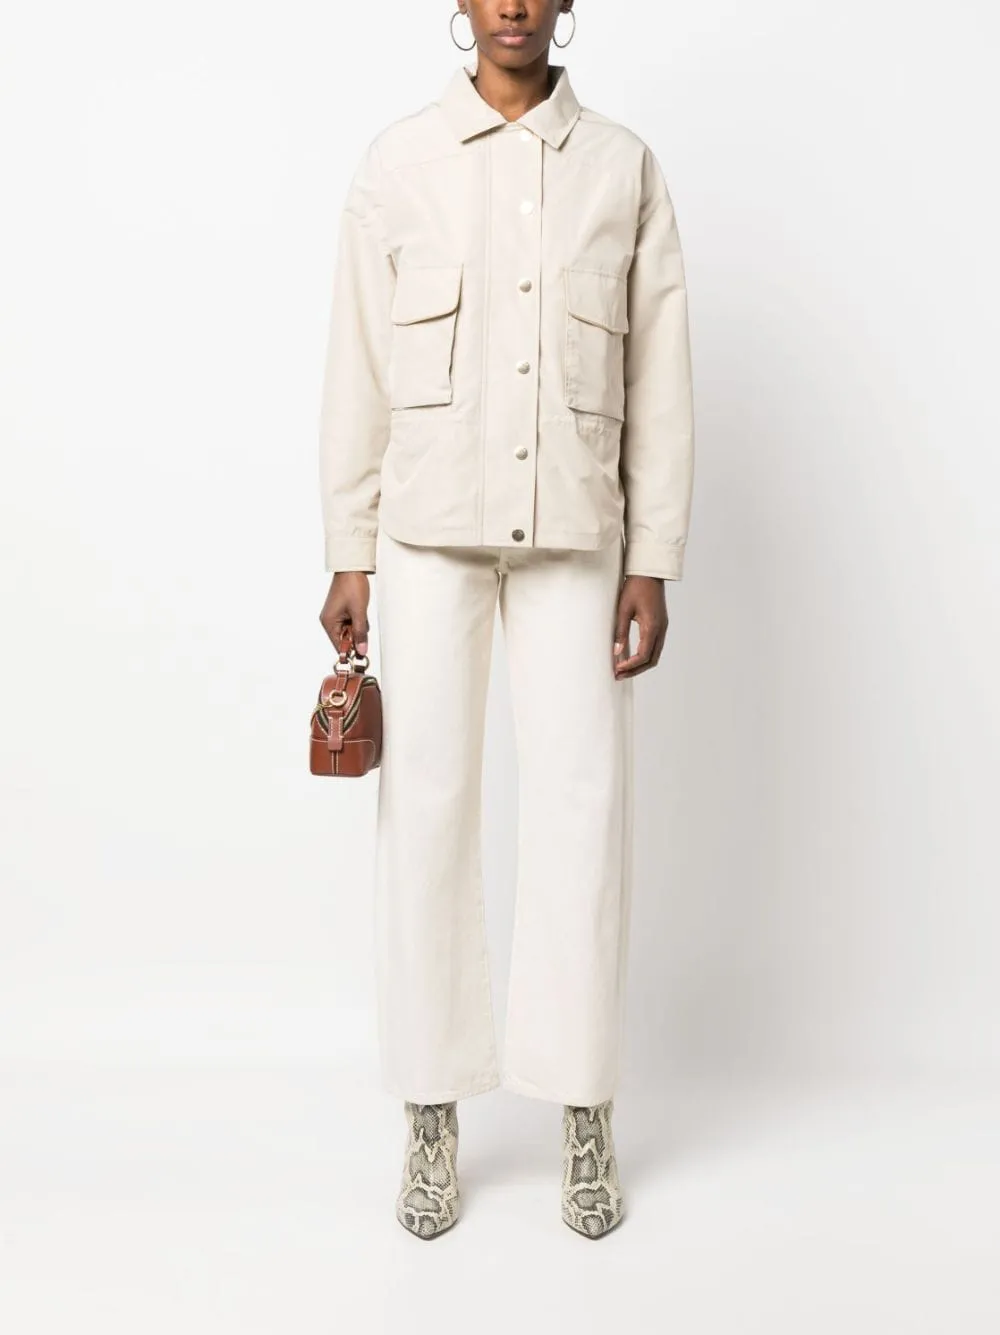 Giacca da donna firmata Kiton giacca con chiusura con bottone a pressione Cappotti a maniche lunghe Capispalla primaverili Giacche di moda donna